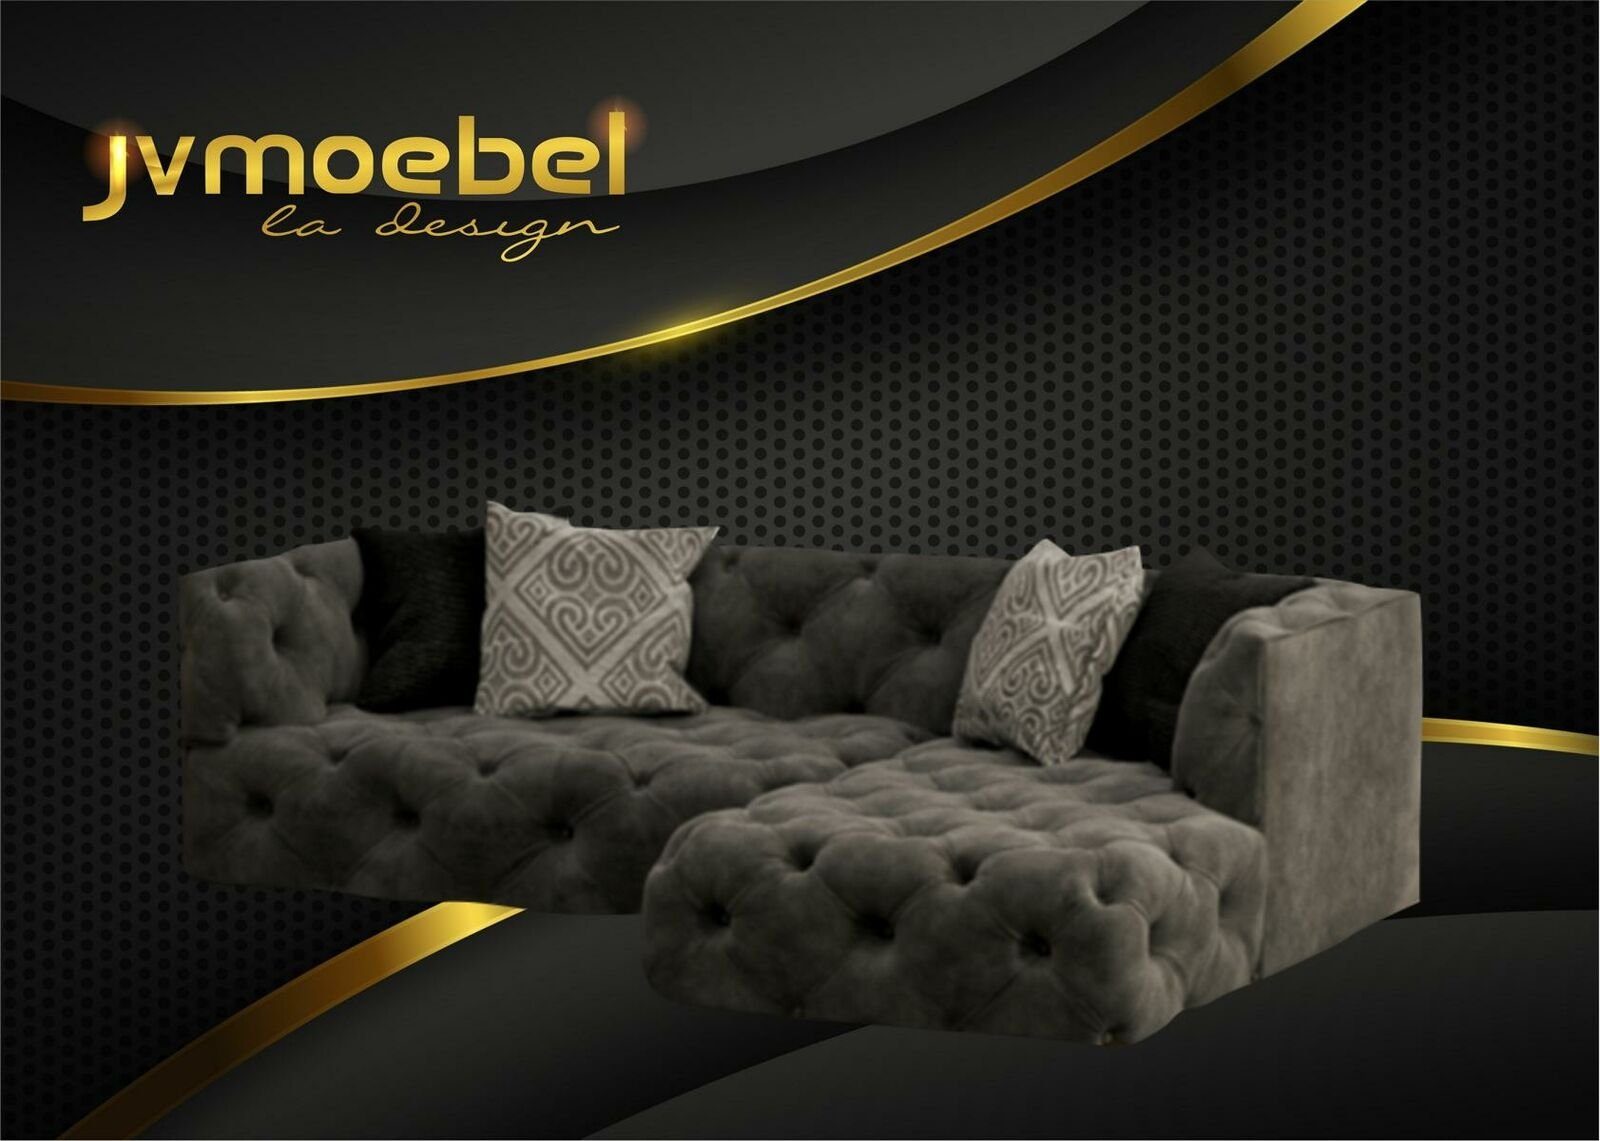 Braunes Grau Made in Neu, L-Form Polstermöbel JVmoebel Chesterfield Design Ecksofa Couch Europe